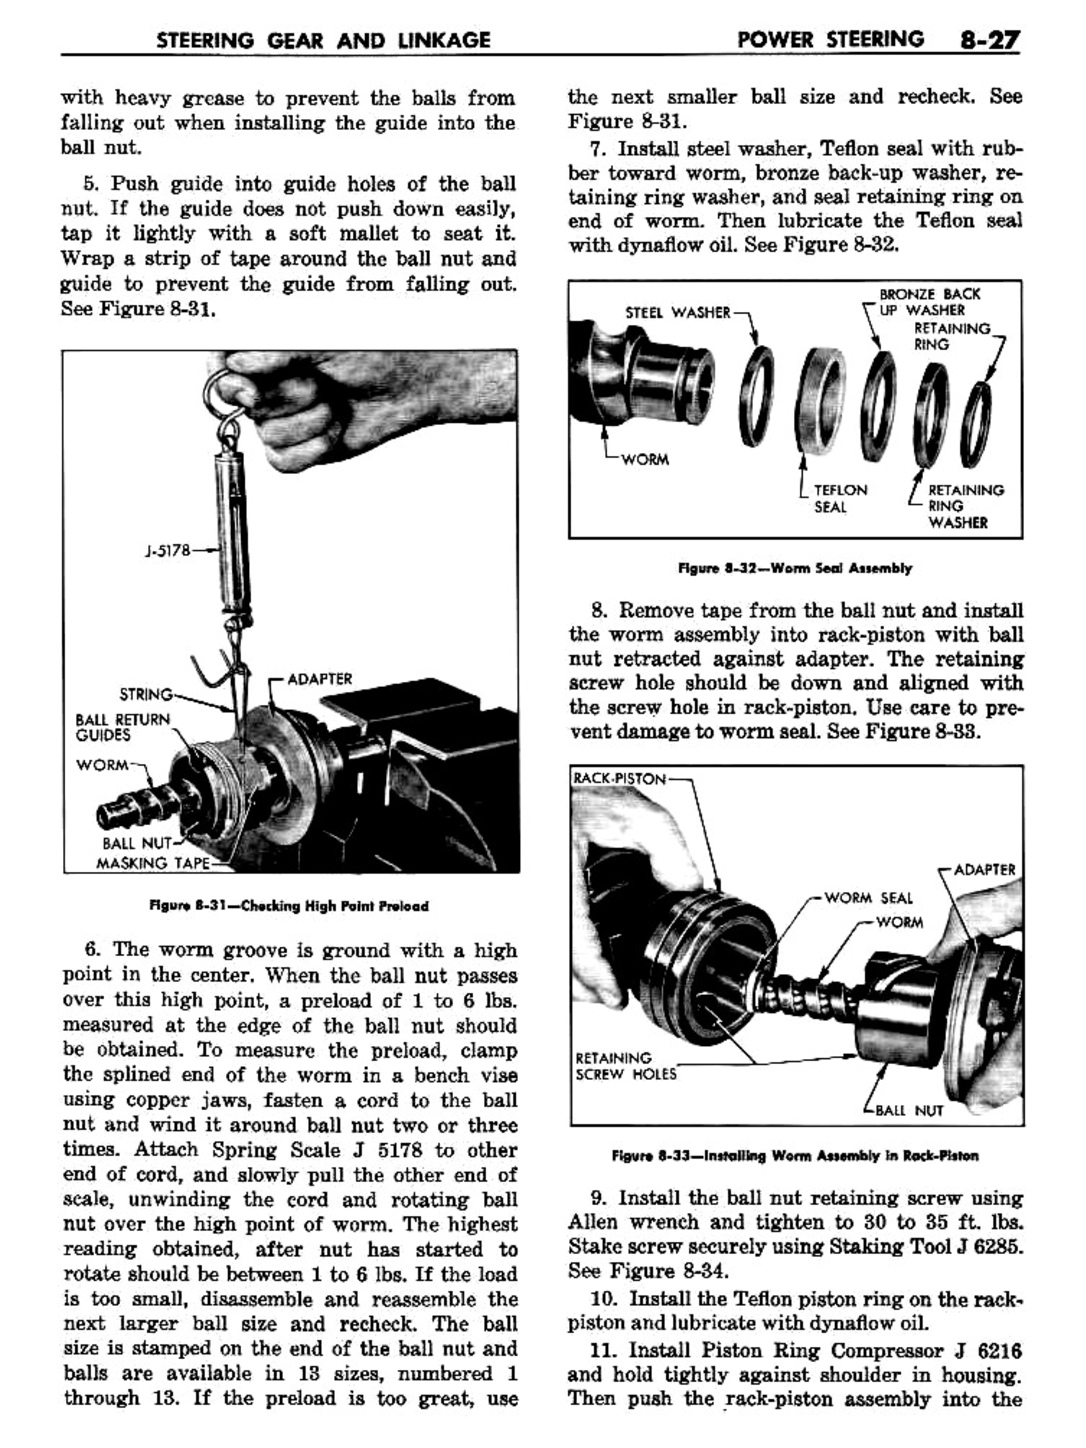 n_09 1957 Buick Shop Manual - Steering-027-027.jpg